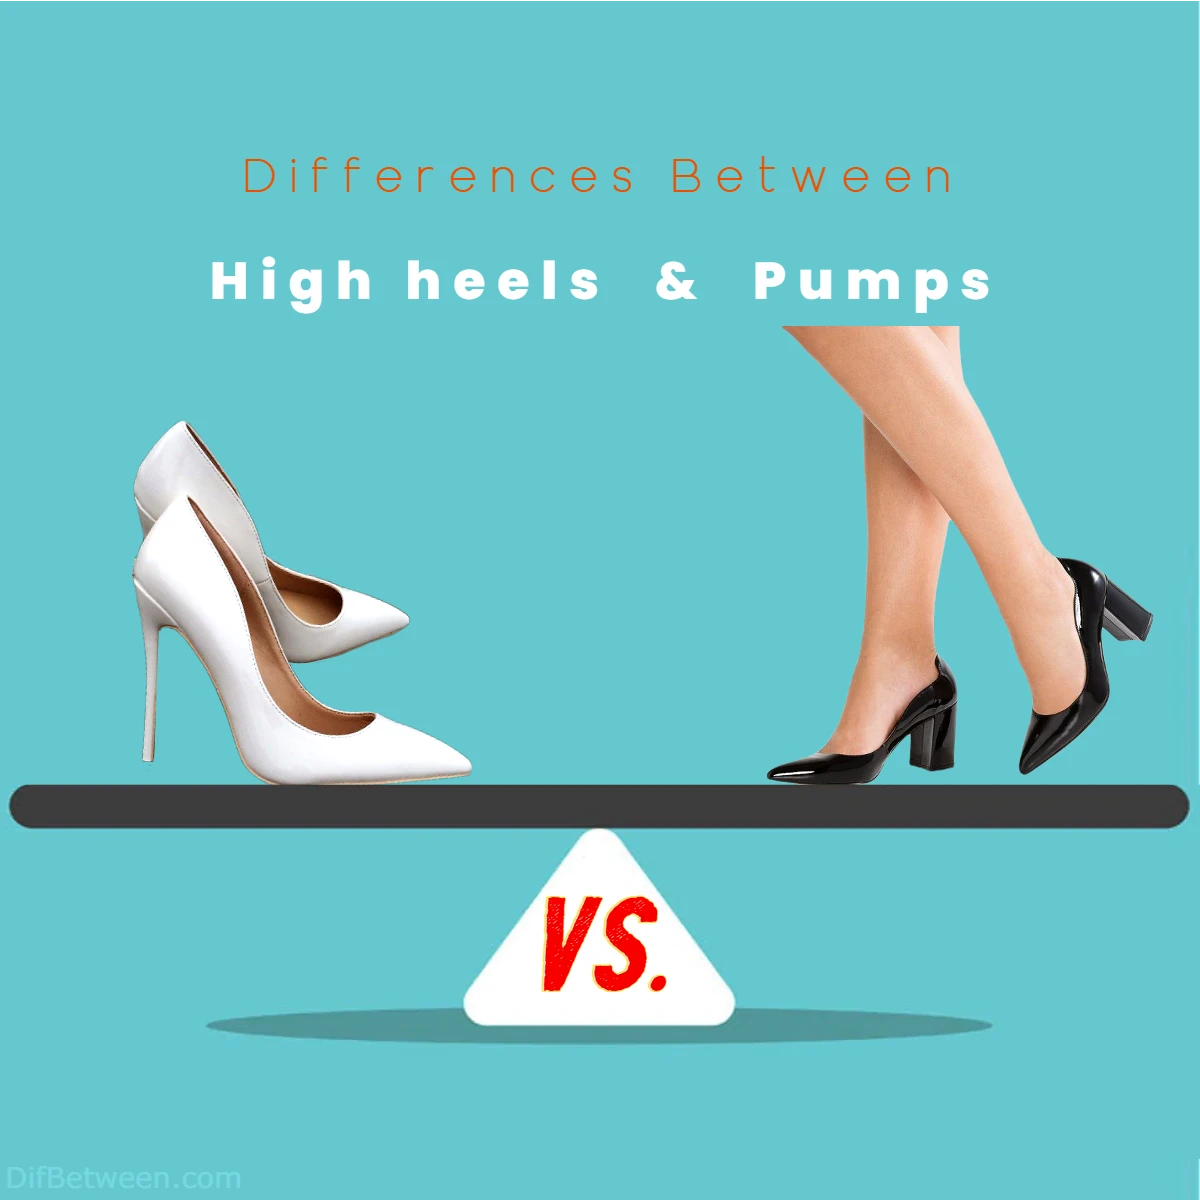 Differences Between High heels vs Pumps